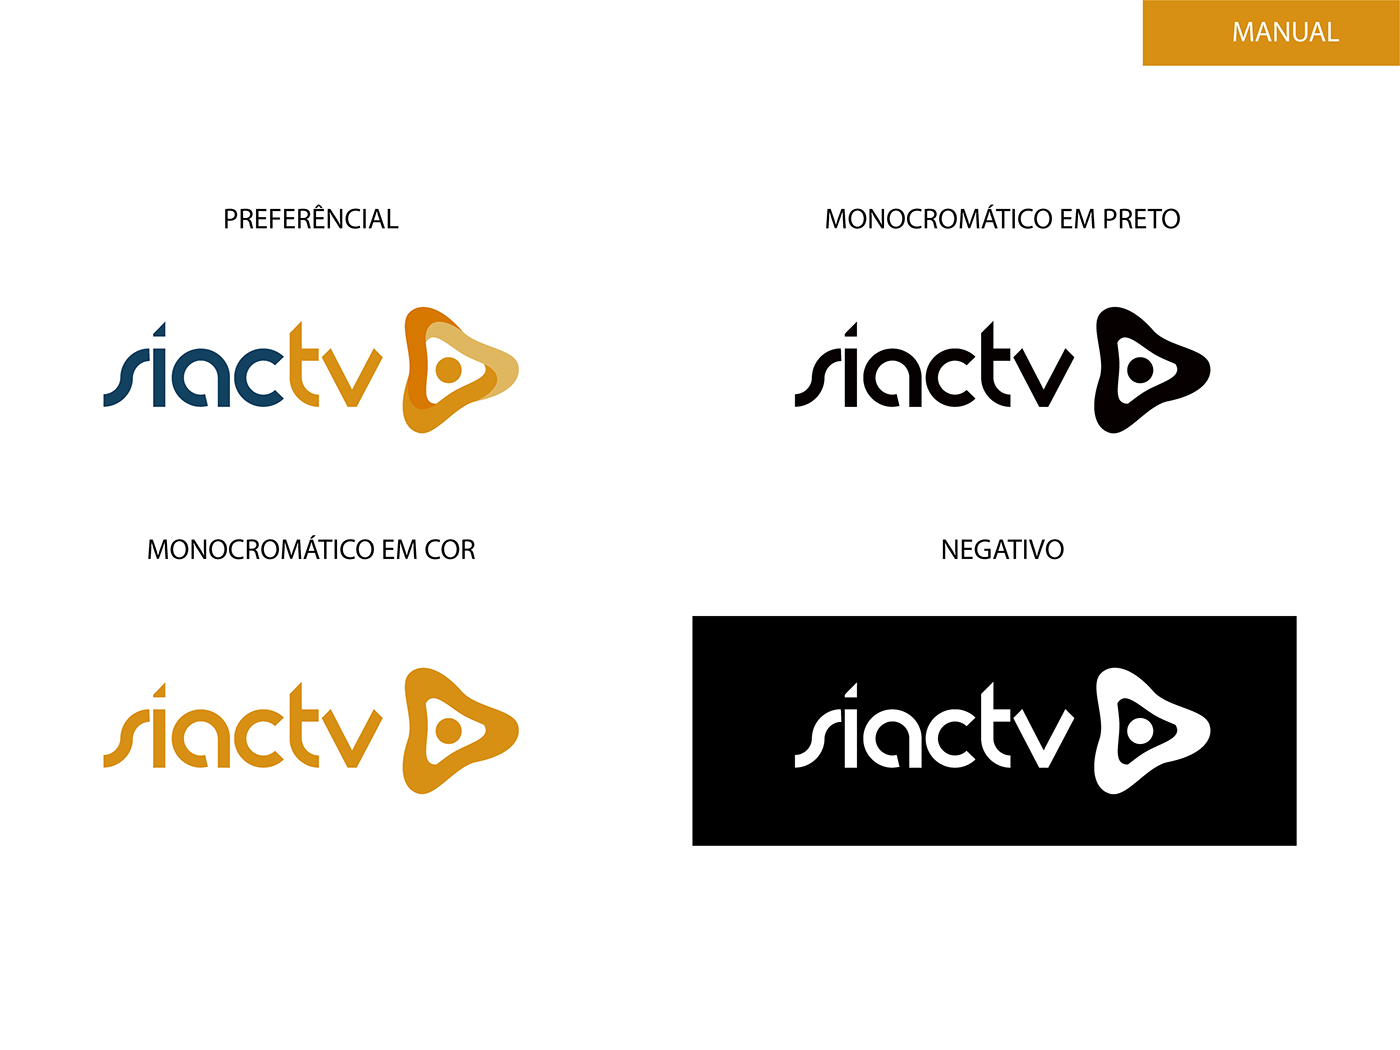 SIAC TV rebranding redesing sitema